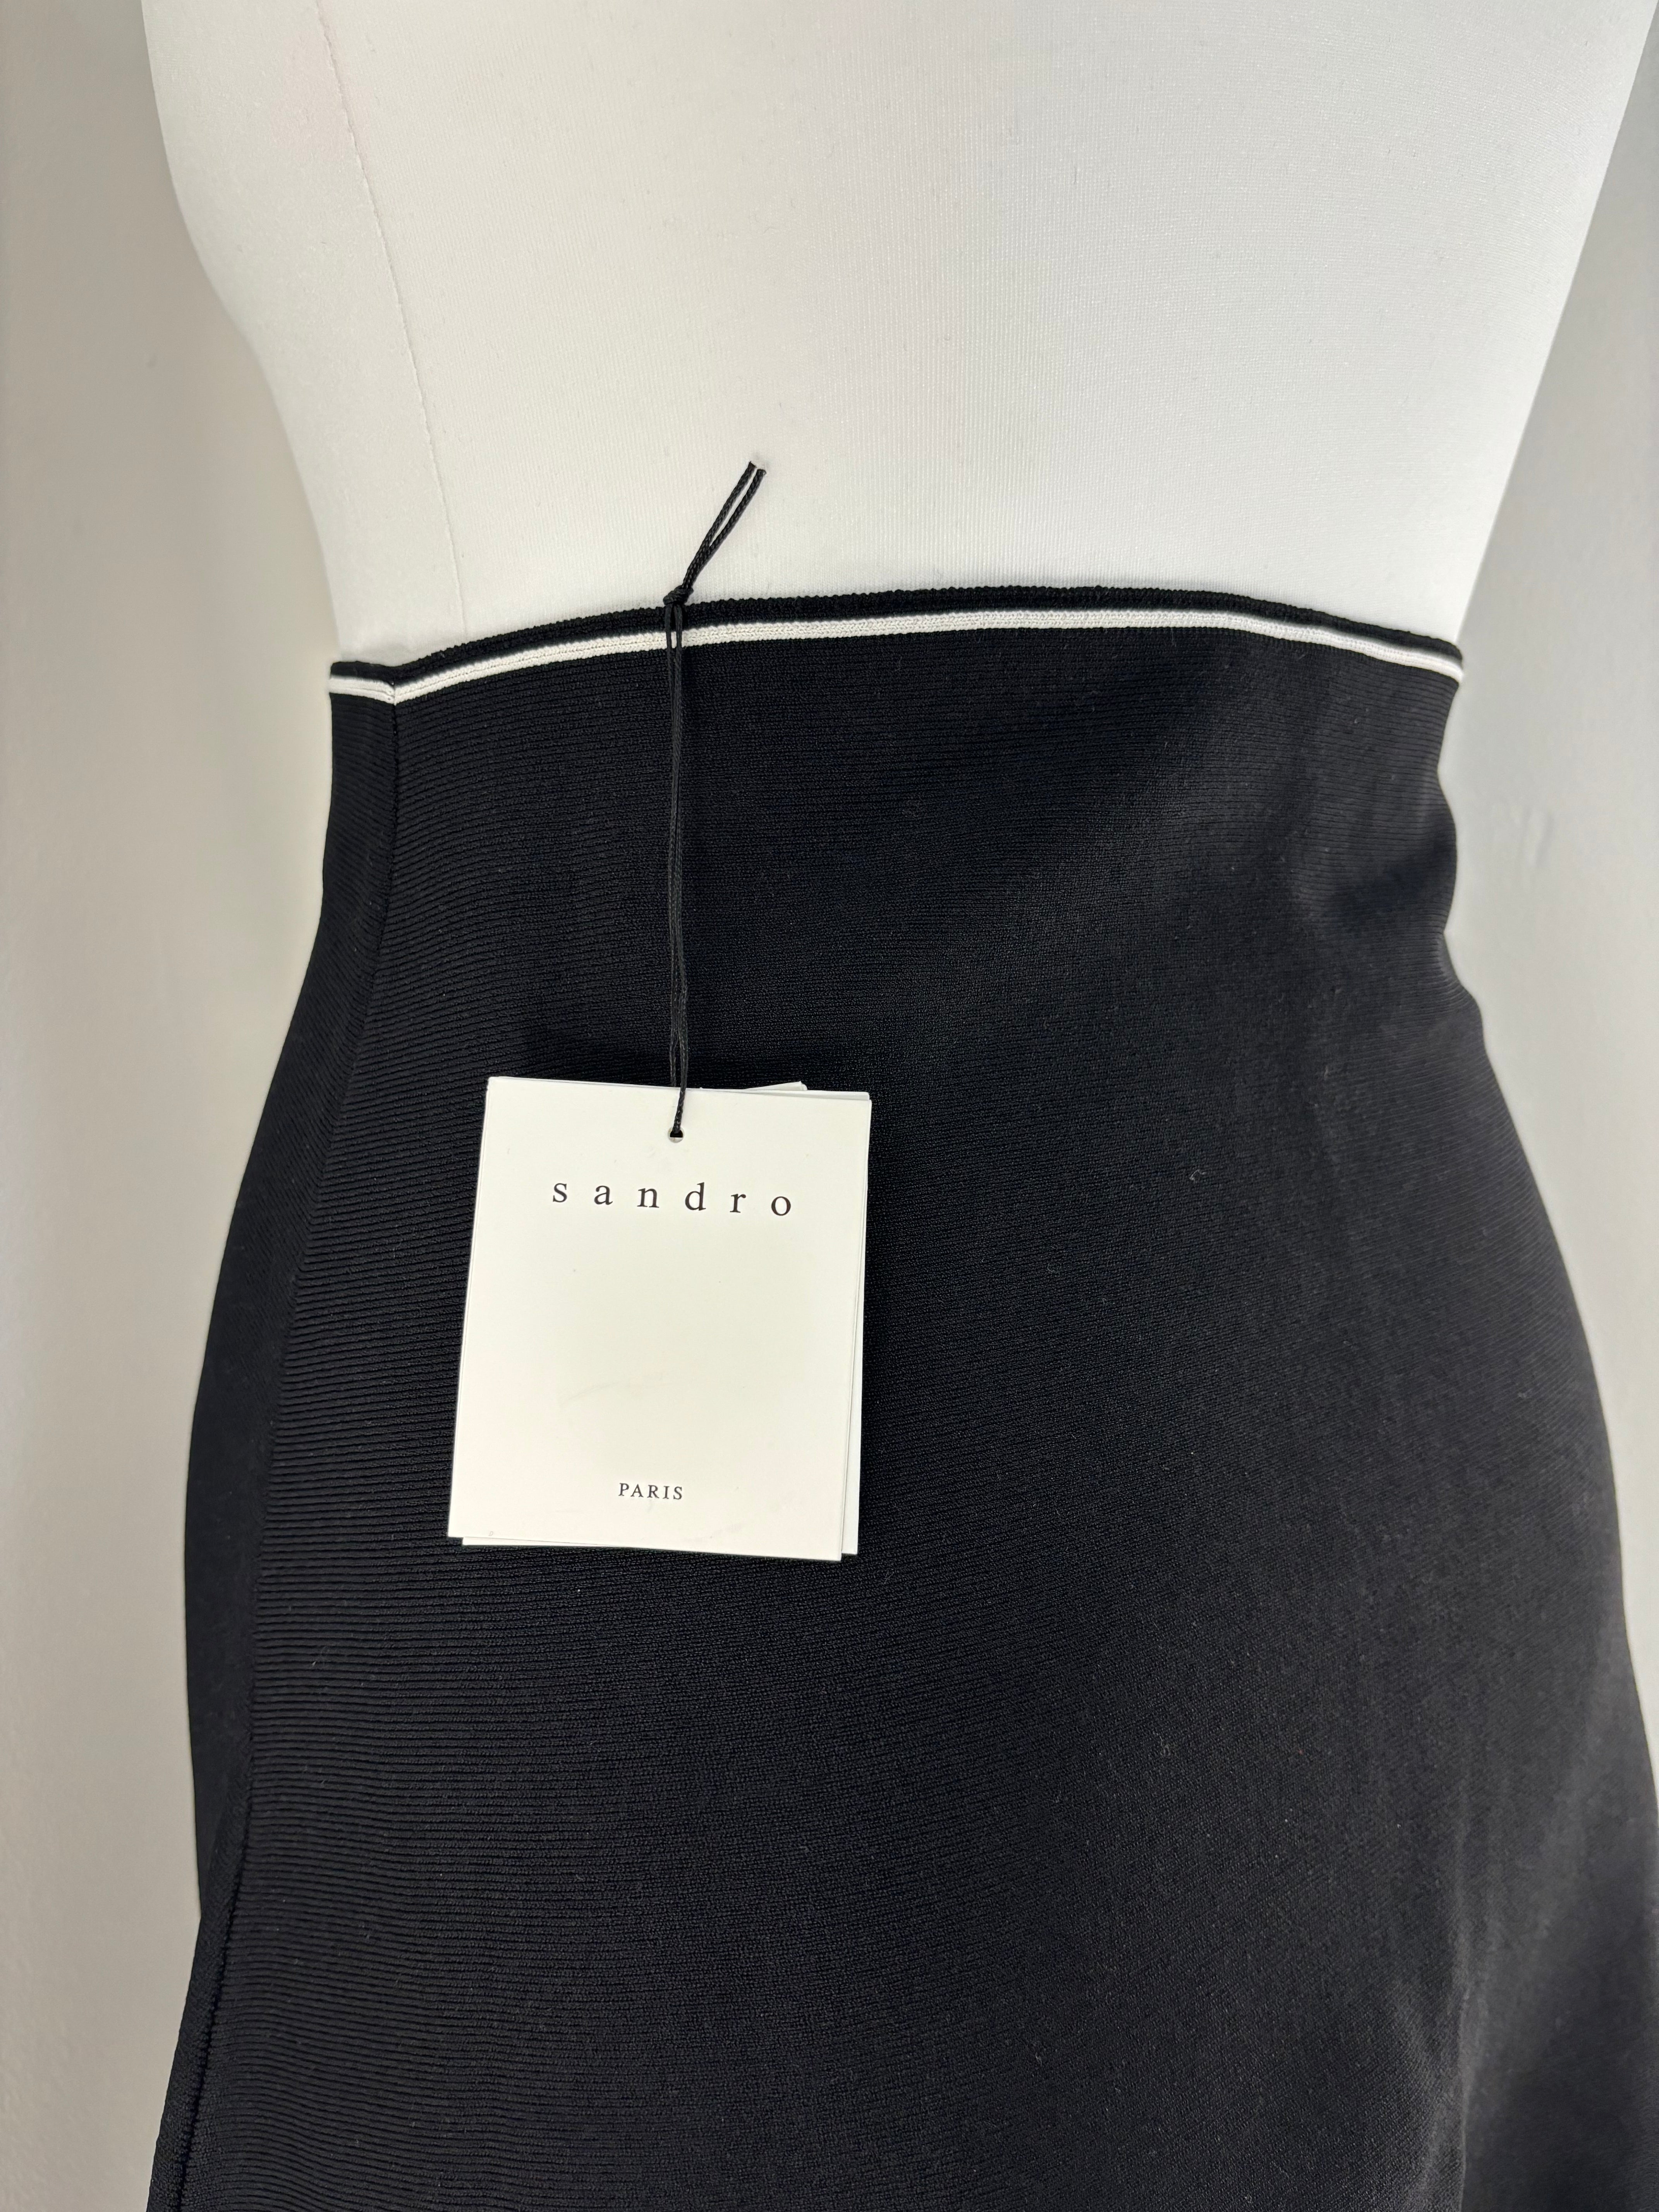 sandro-paris-mini-skirt